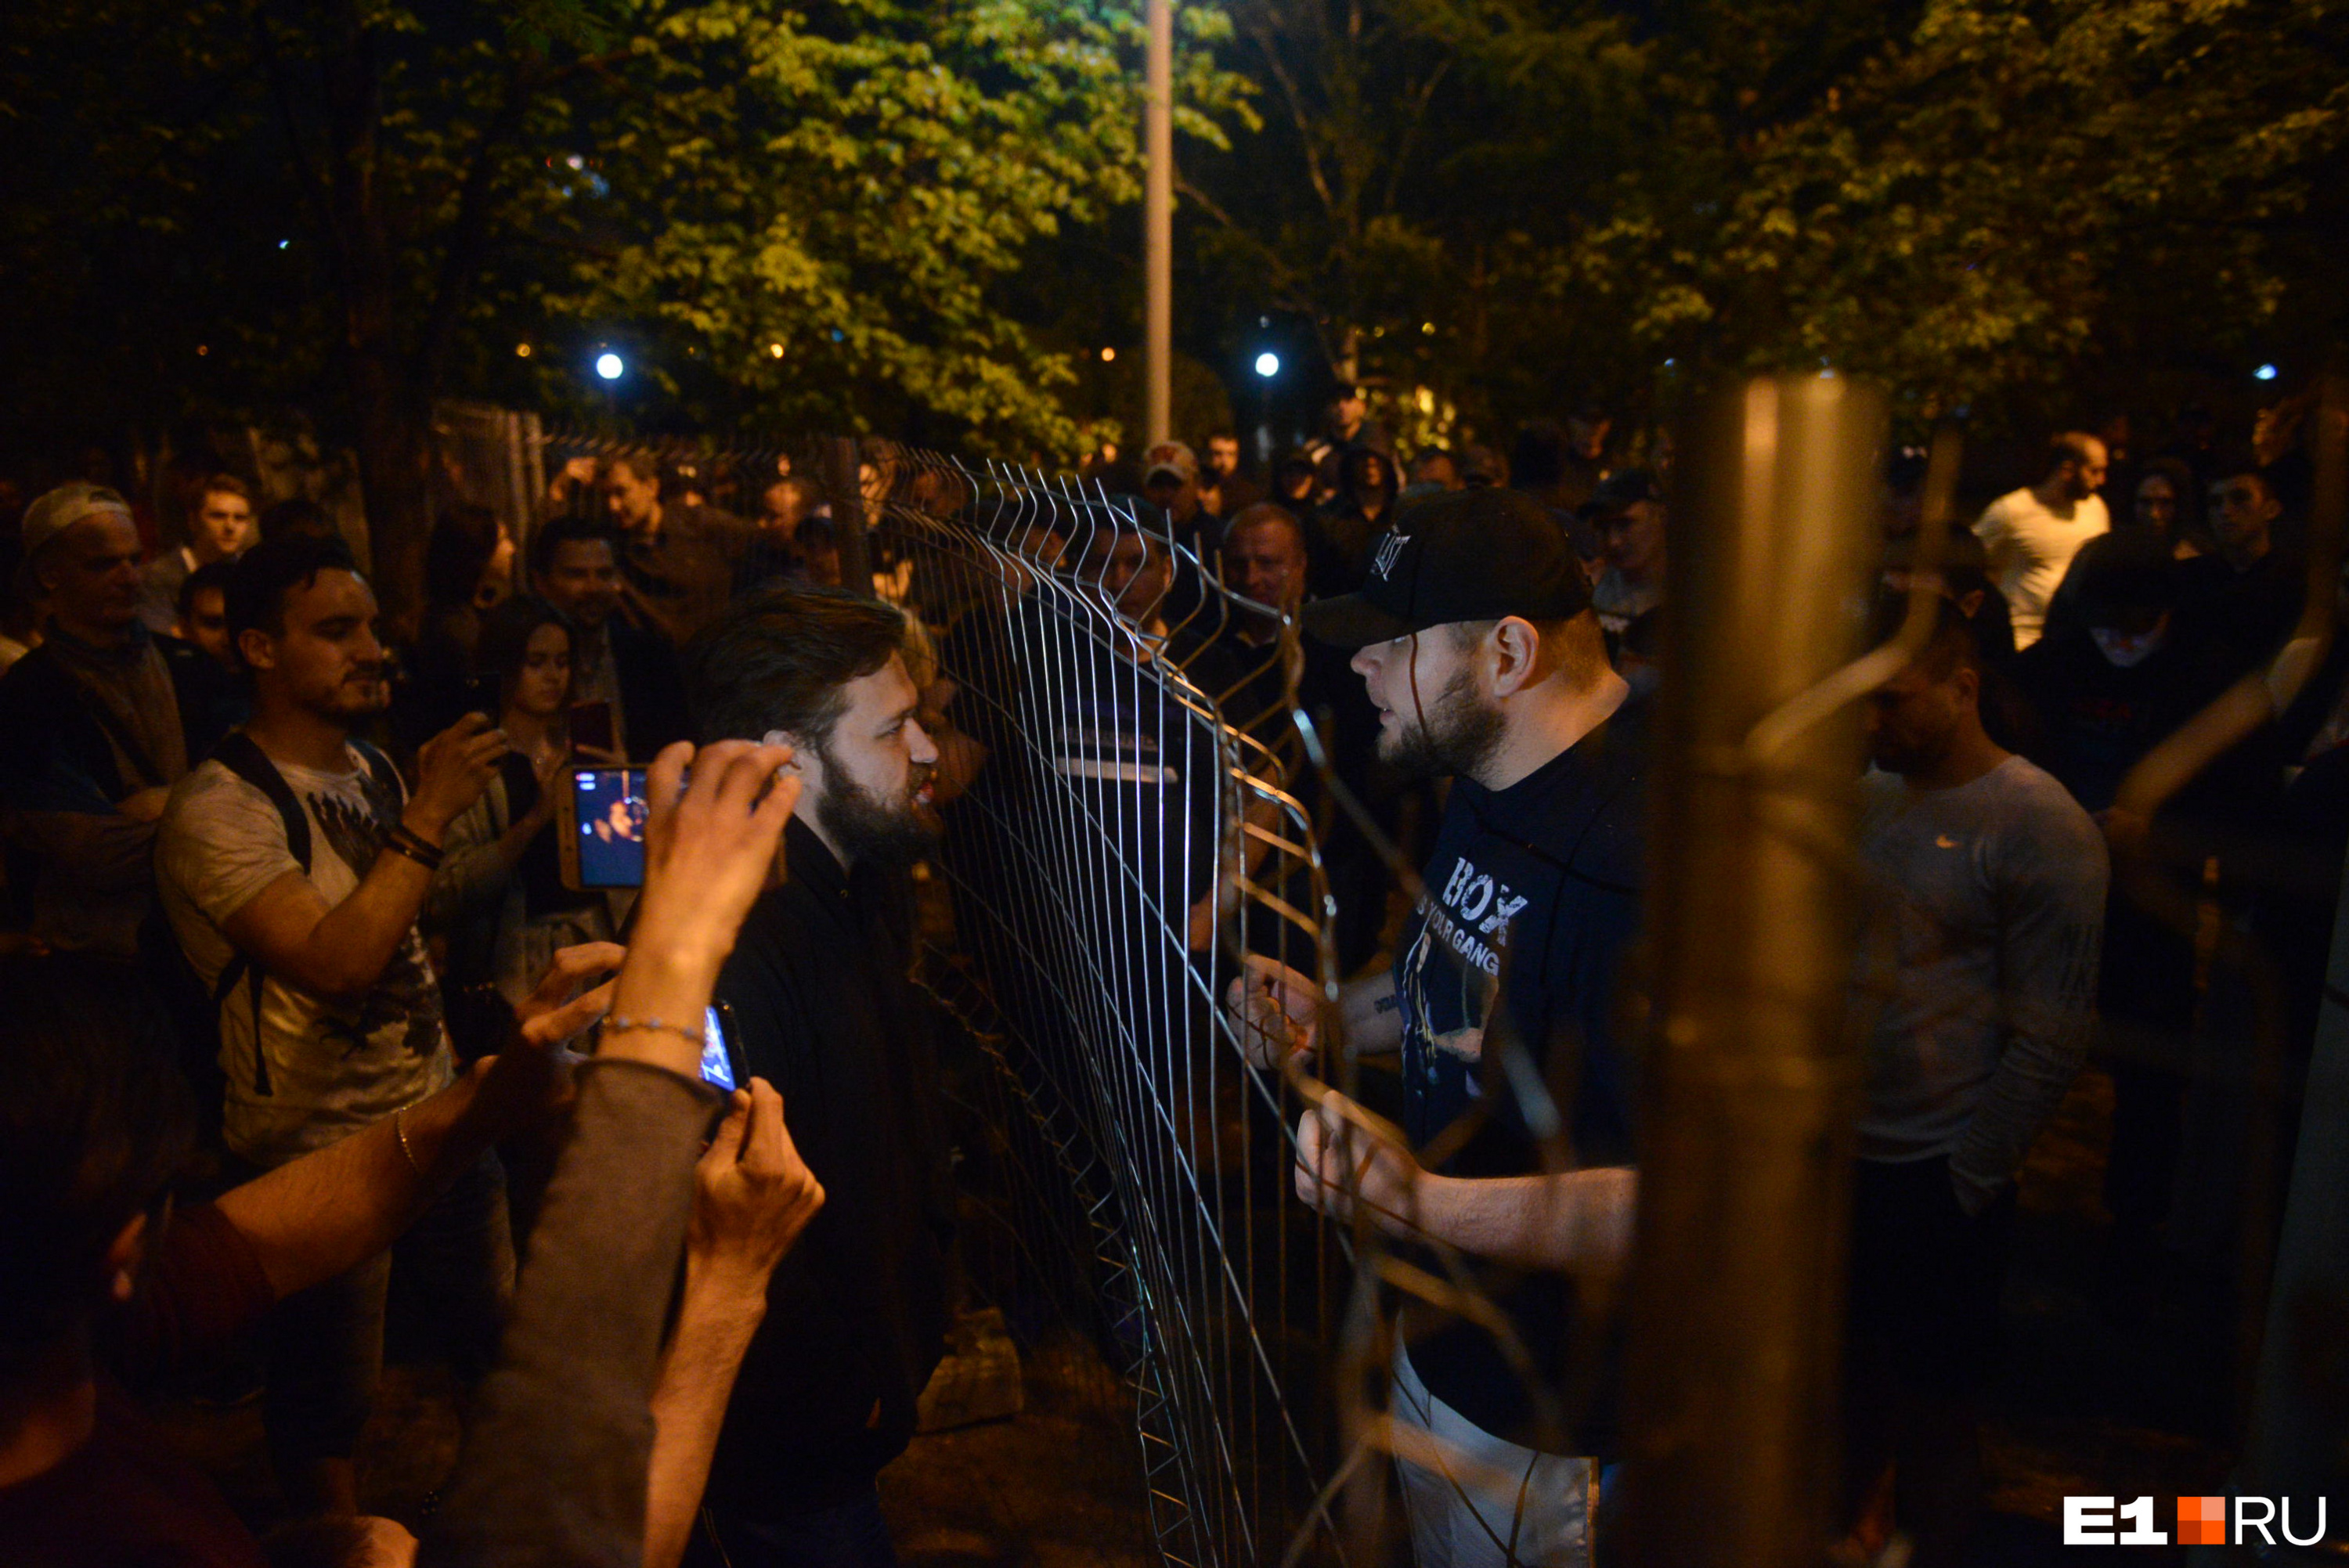 Протестующие и спортсмены кричали и оскорбляли друг друга через забор. Так продолжалось до самого утра